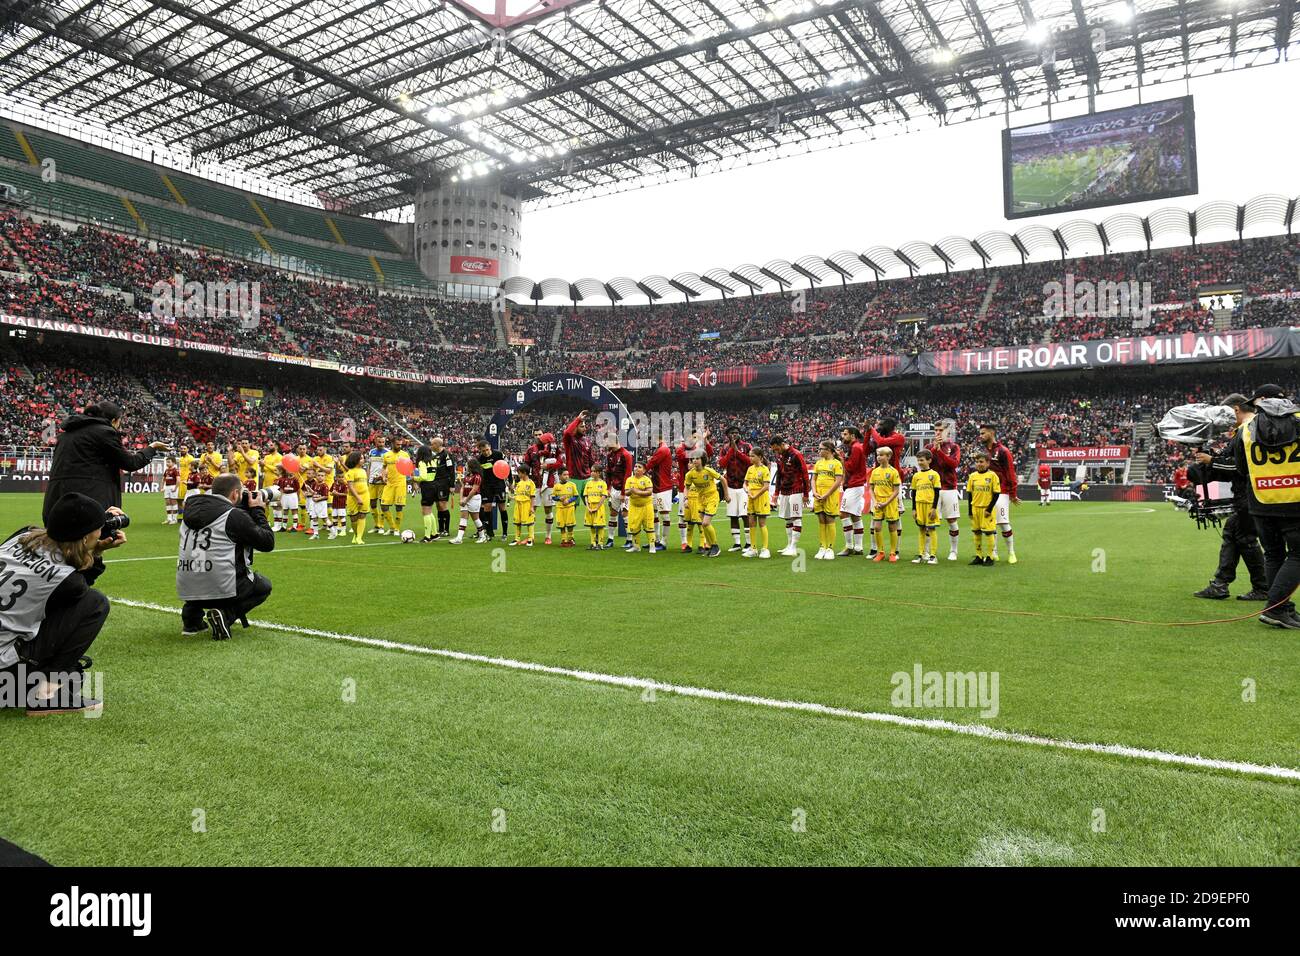 Le squadre di calcio AC Milan e Frosinone entrano allo stadio di calcio san siro per la serie a italiana, a Milano. Foto Stock